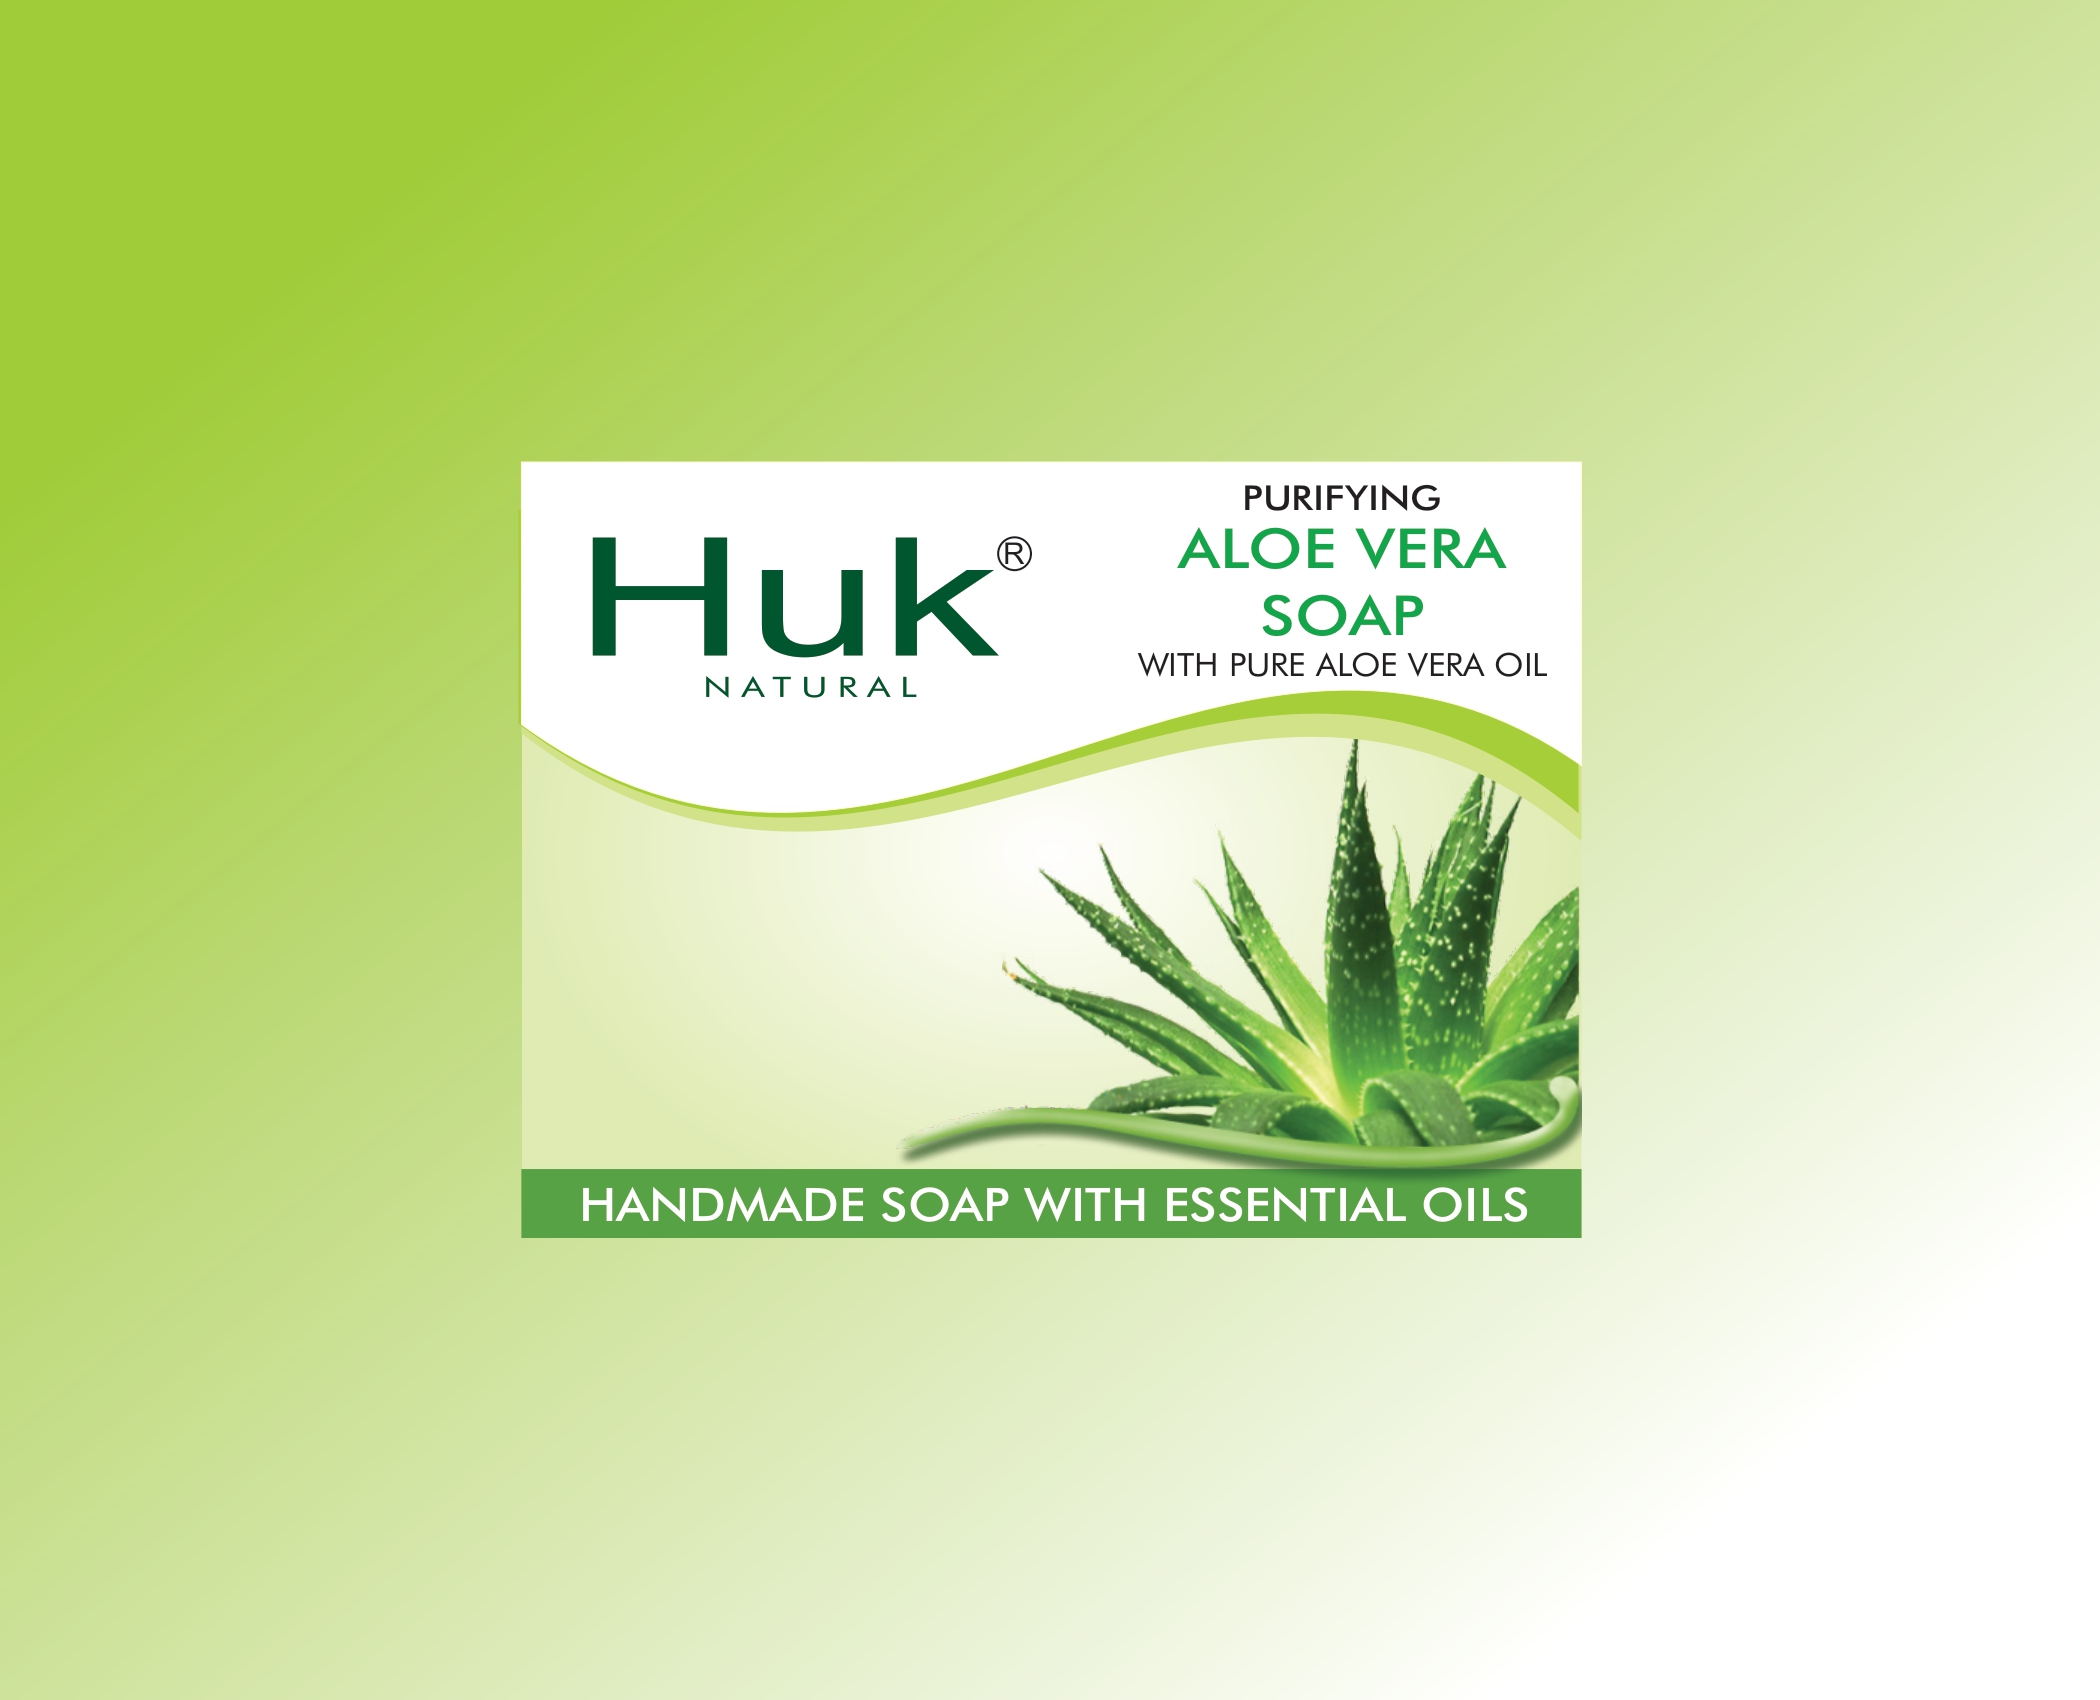 Huk Aloe Vera Soap from Huk